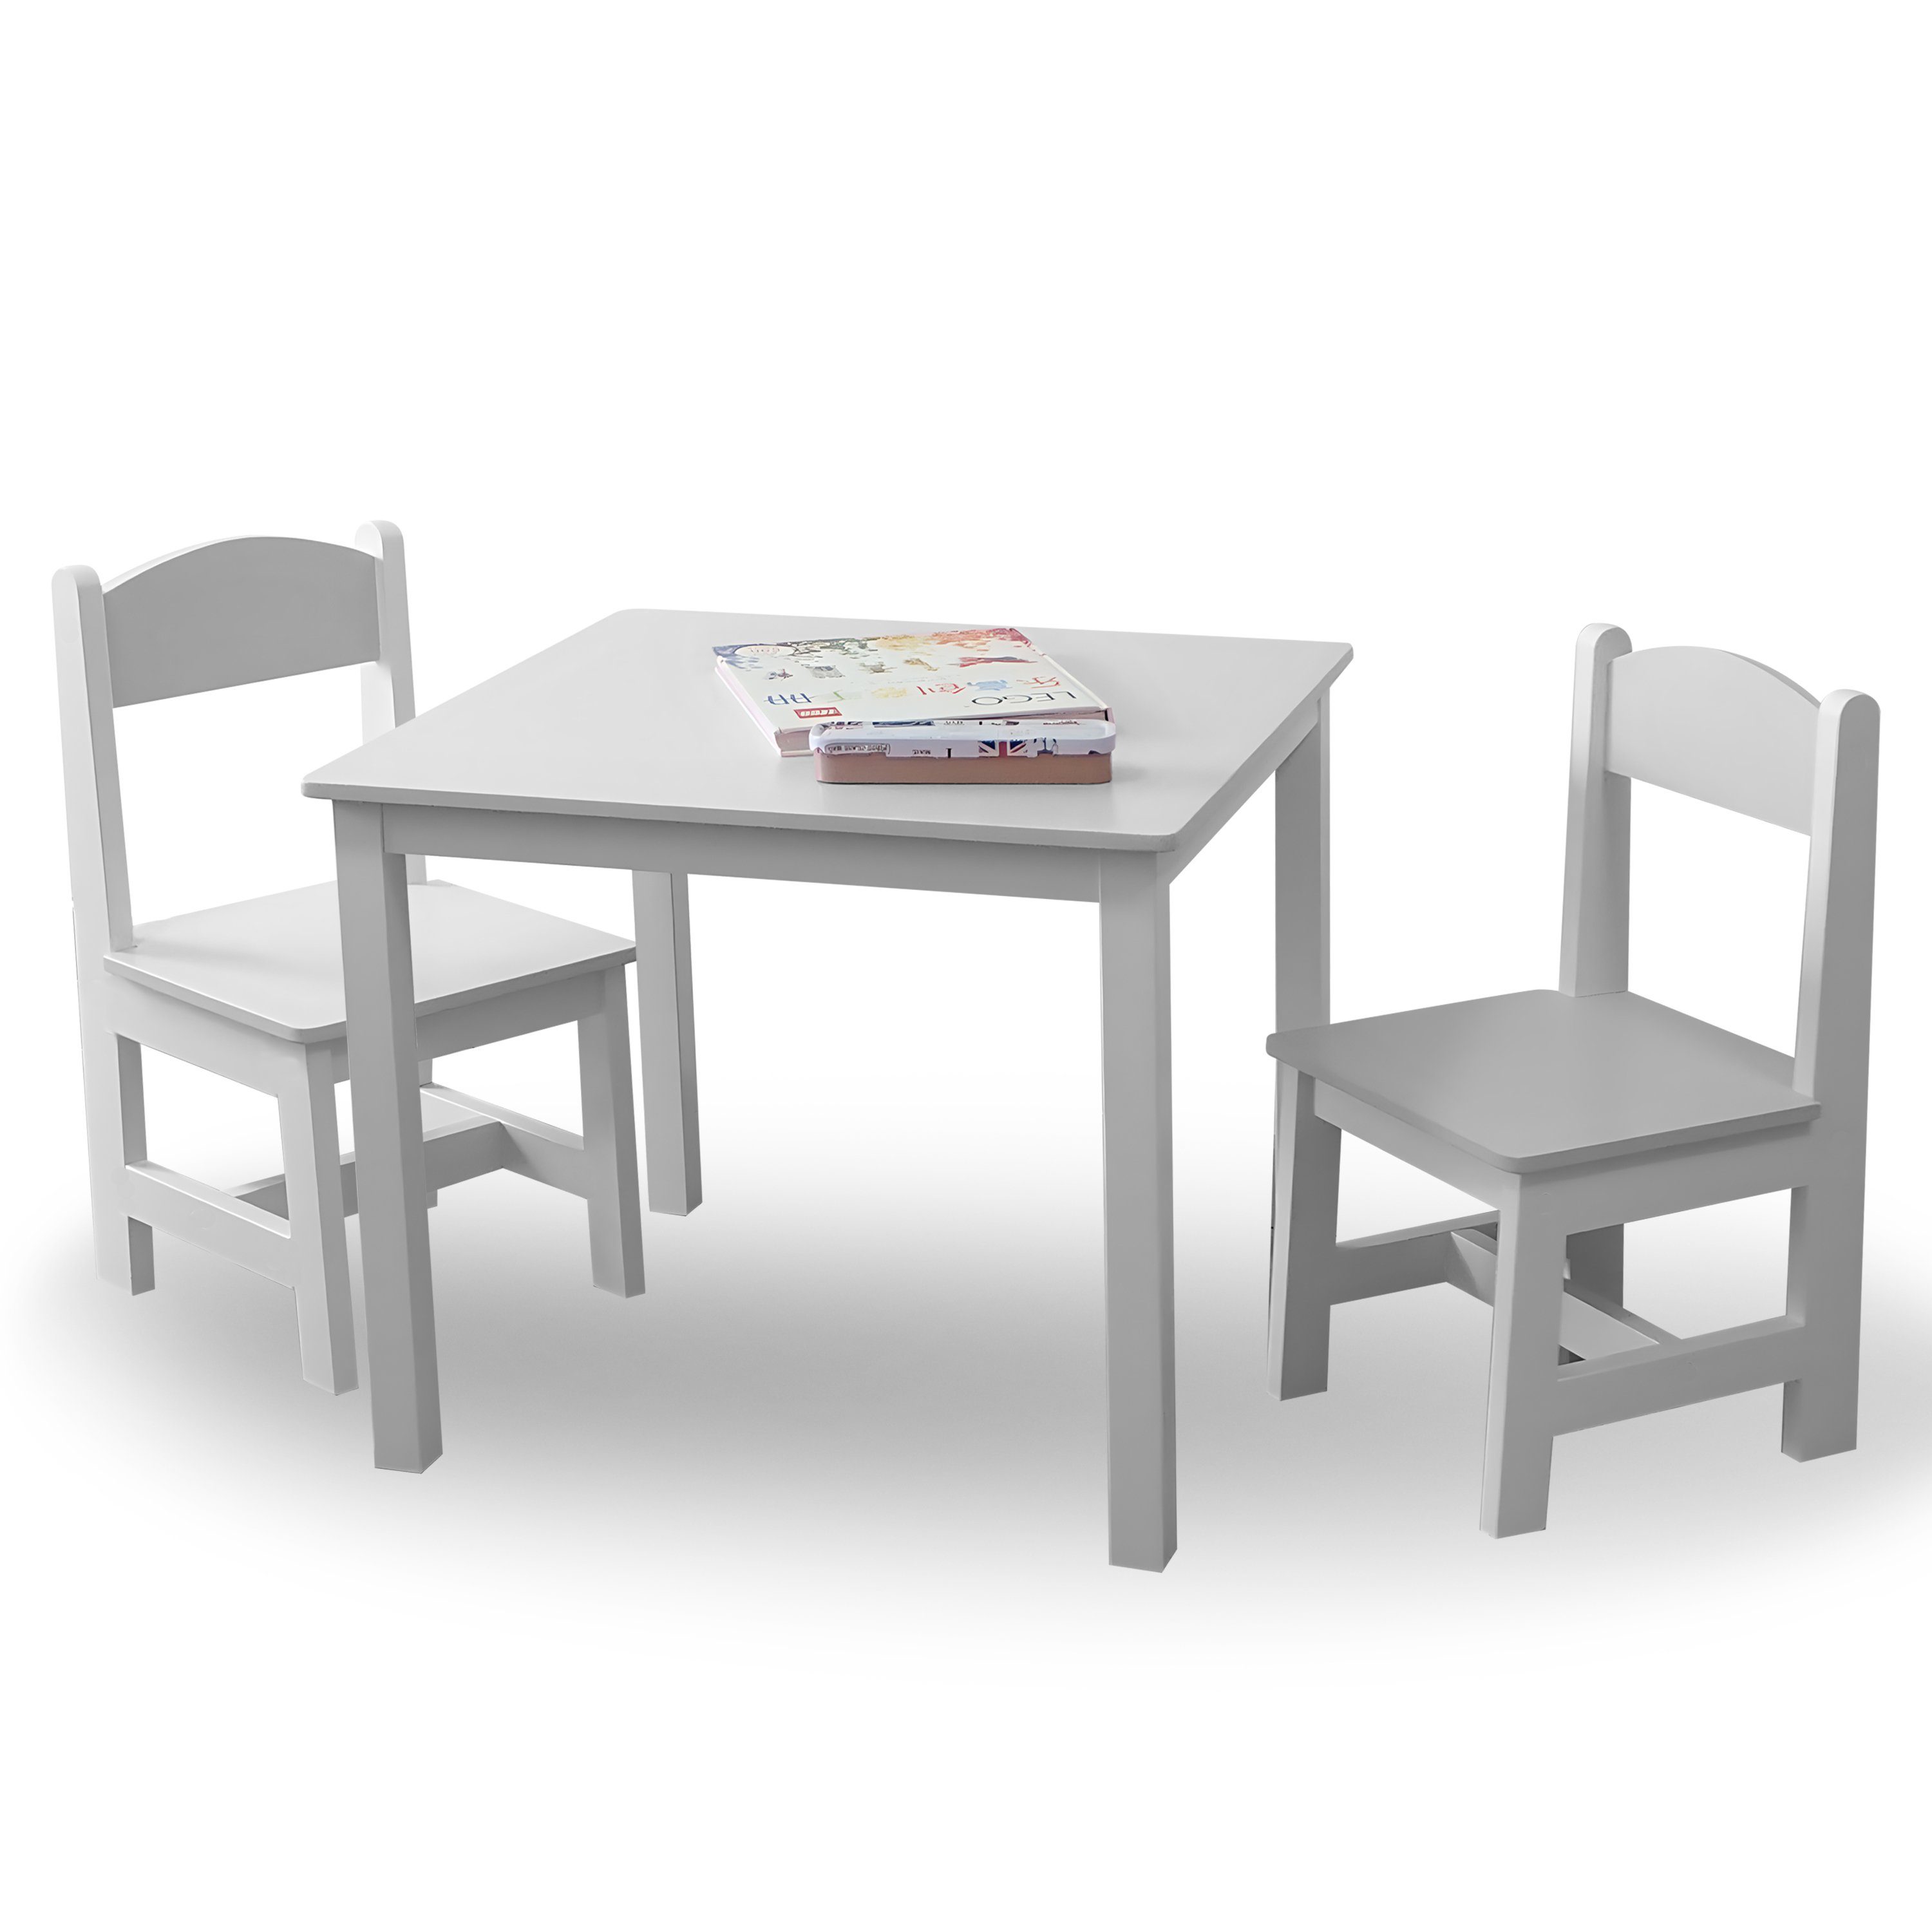 2 habeig Weiß 60x50x50cm Kindersitzgruppe Maltisch & Kindermöbelset Stühle Hocker Kindertisch